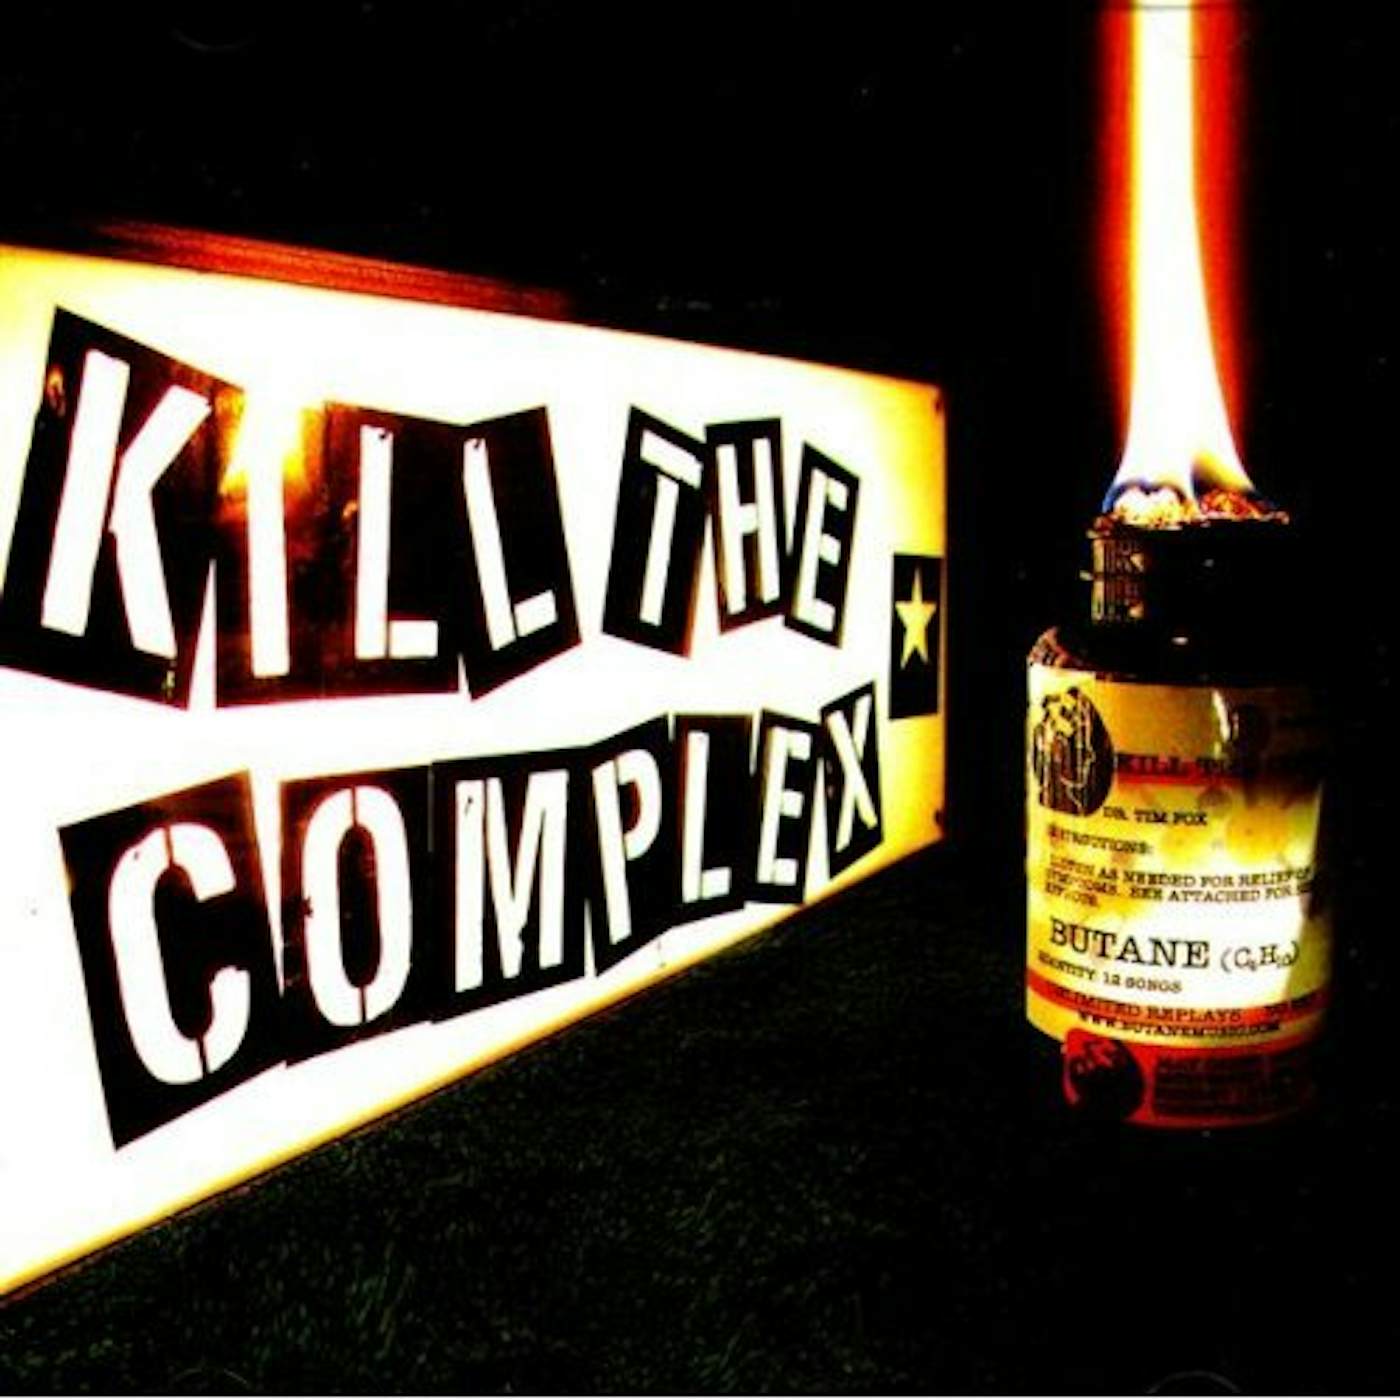 Butane KILL THE COMPLEX CD